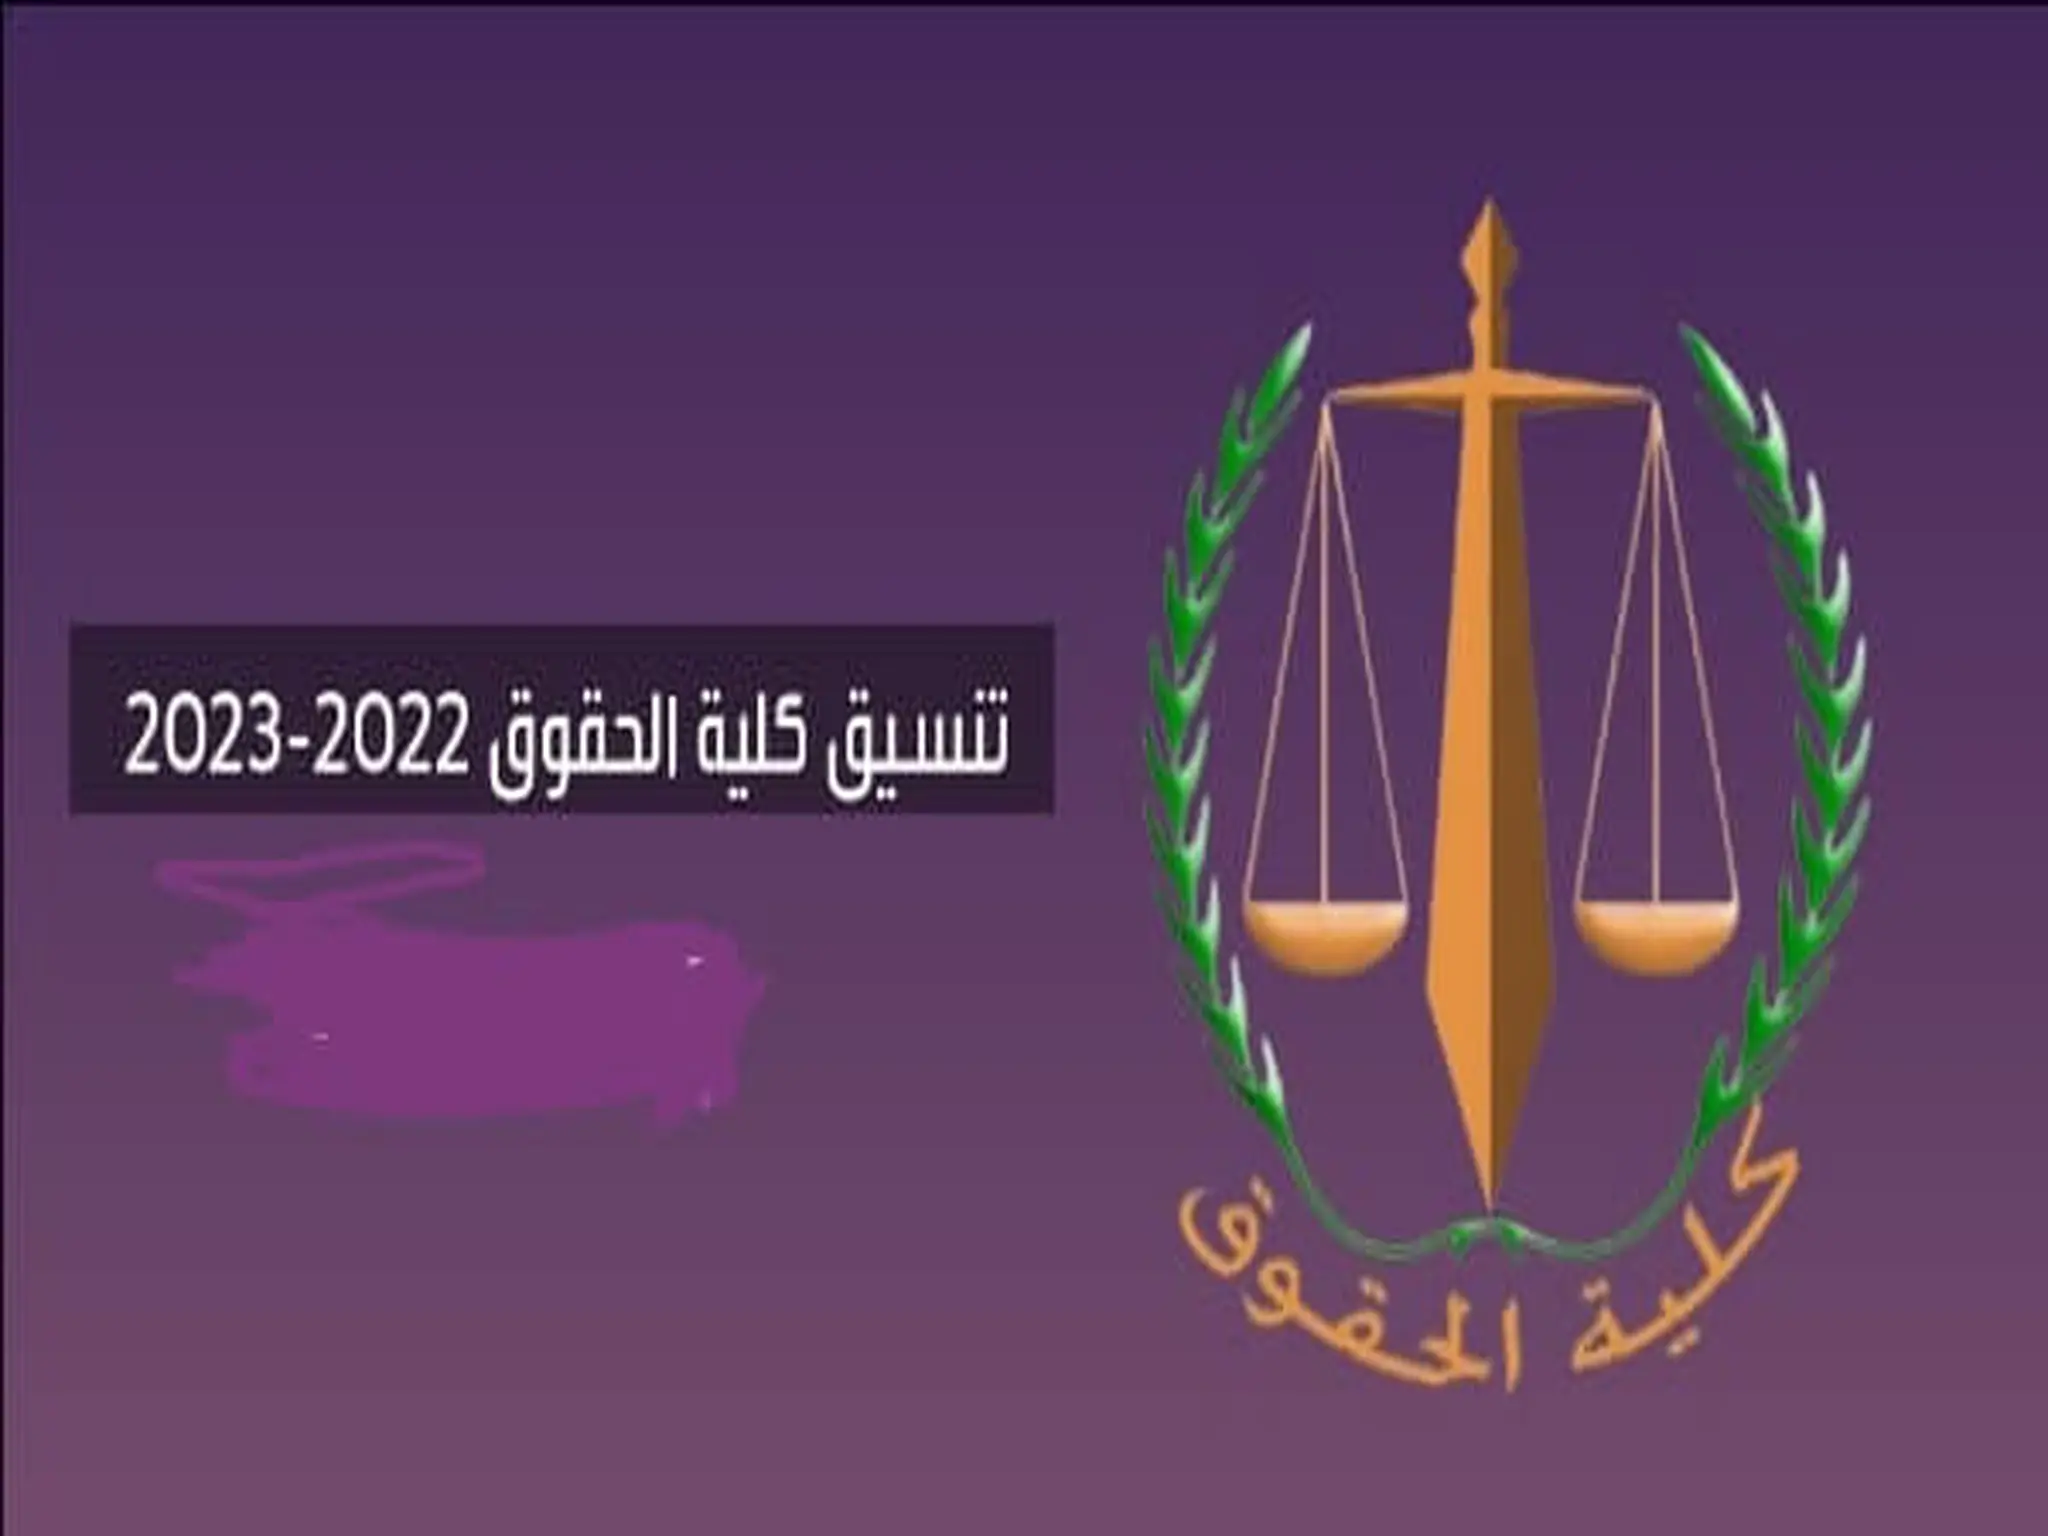 اليكم تنسيق كلية الحقوق 2022-2023 